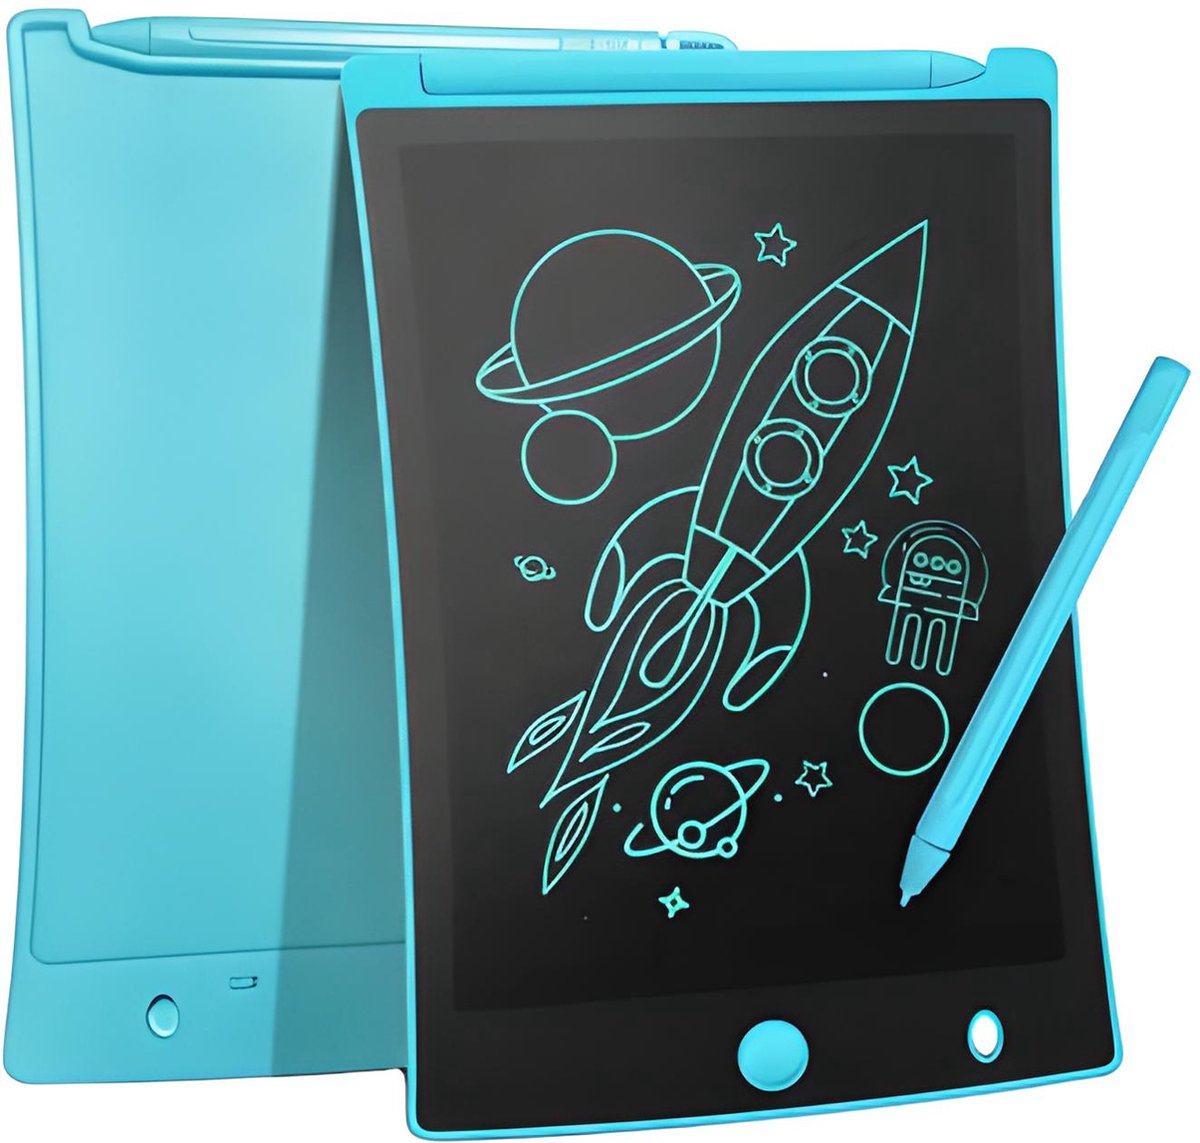 LCD Tekentablet Kinderen "Sky Blue" 8.5 inch Kleurenscherm - Sinterklaas - Sint - Kindertablet - Sinterklaas Cadeautjes - Kerst - Teken Tablet - Tekentablets - Ewriter - Teken Ipad - Schrijven - Verjaardag - Cadeau - Meisje - Waterbestendig